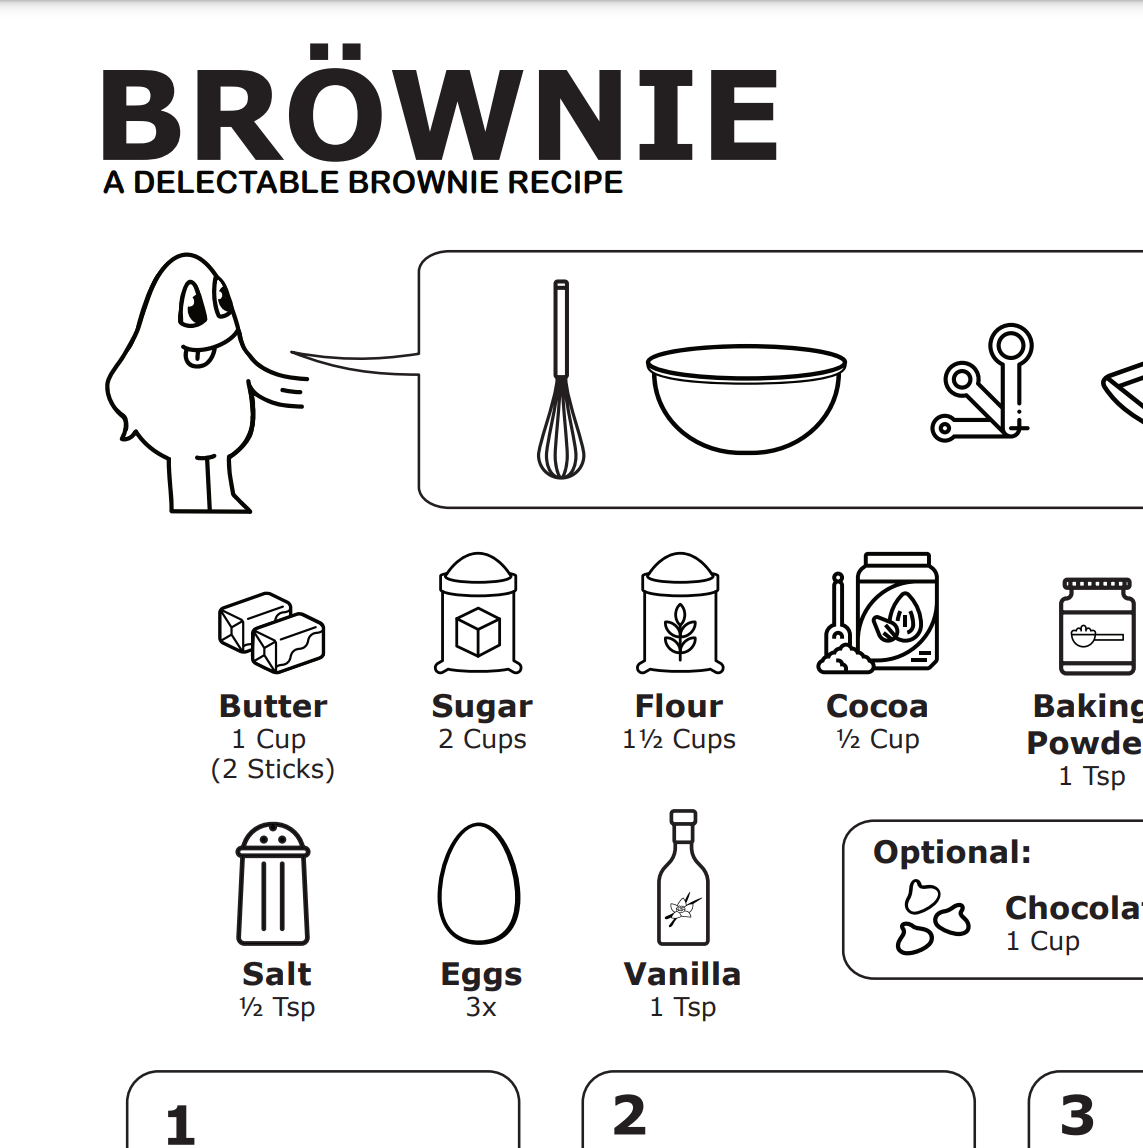 Brownie Recipe: BRÖWNIE